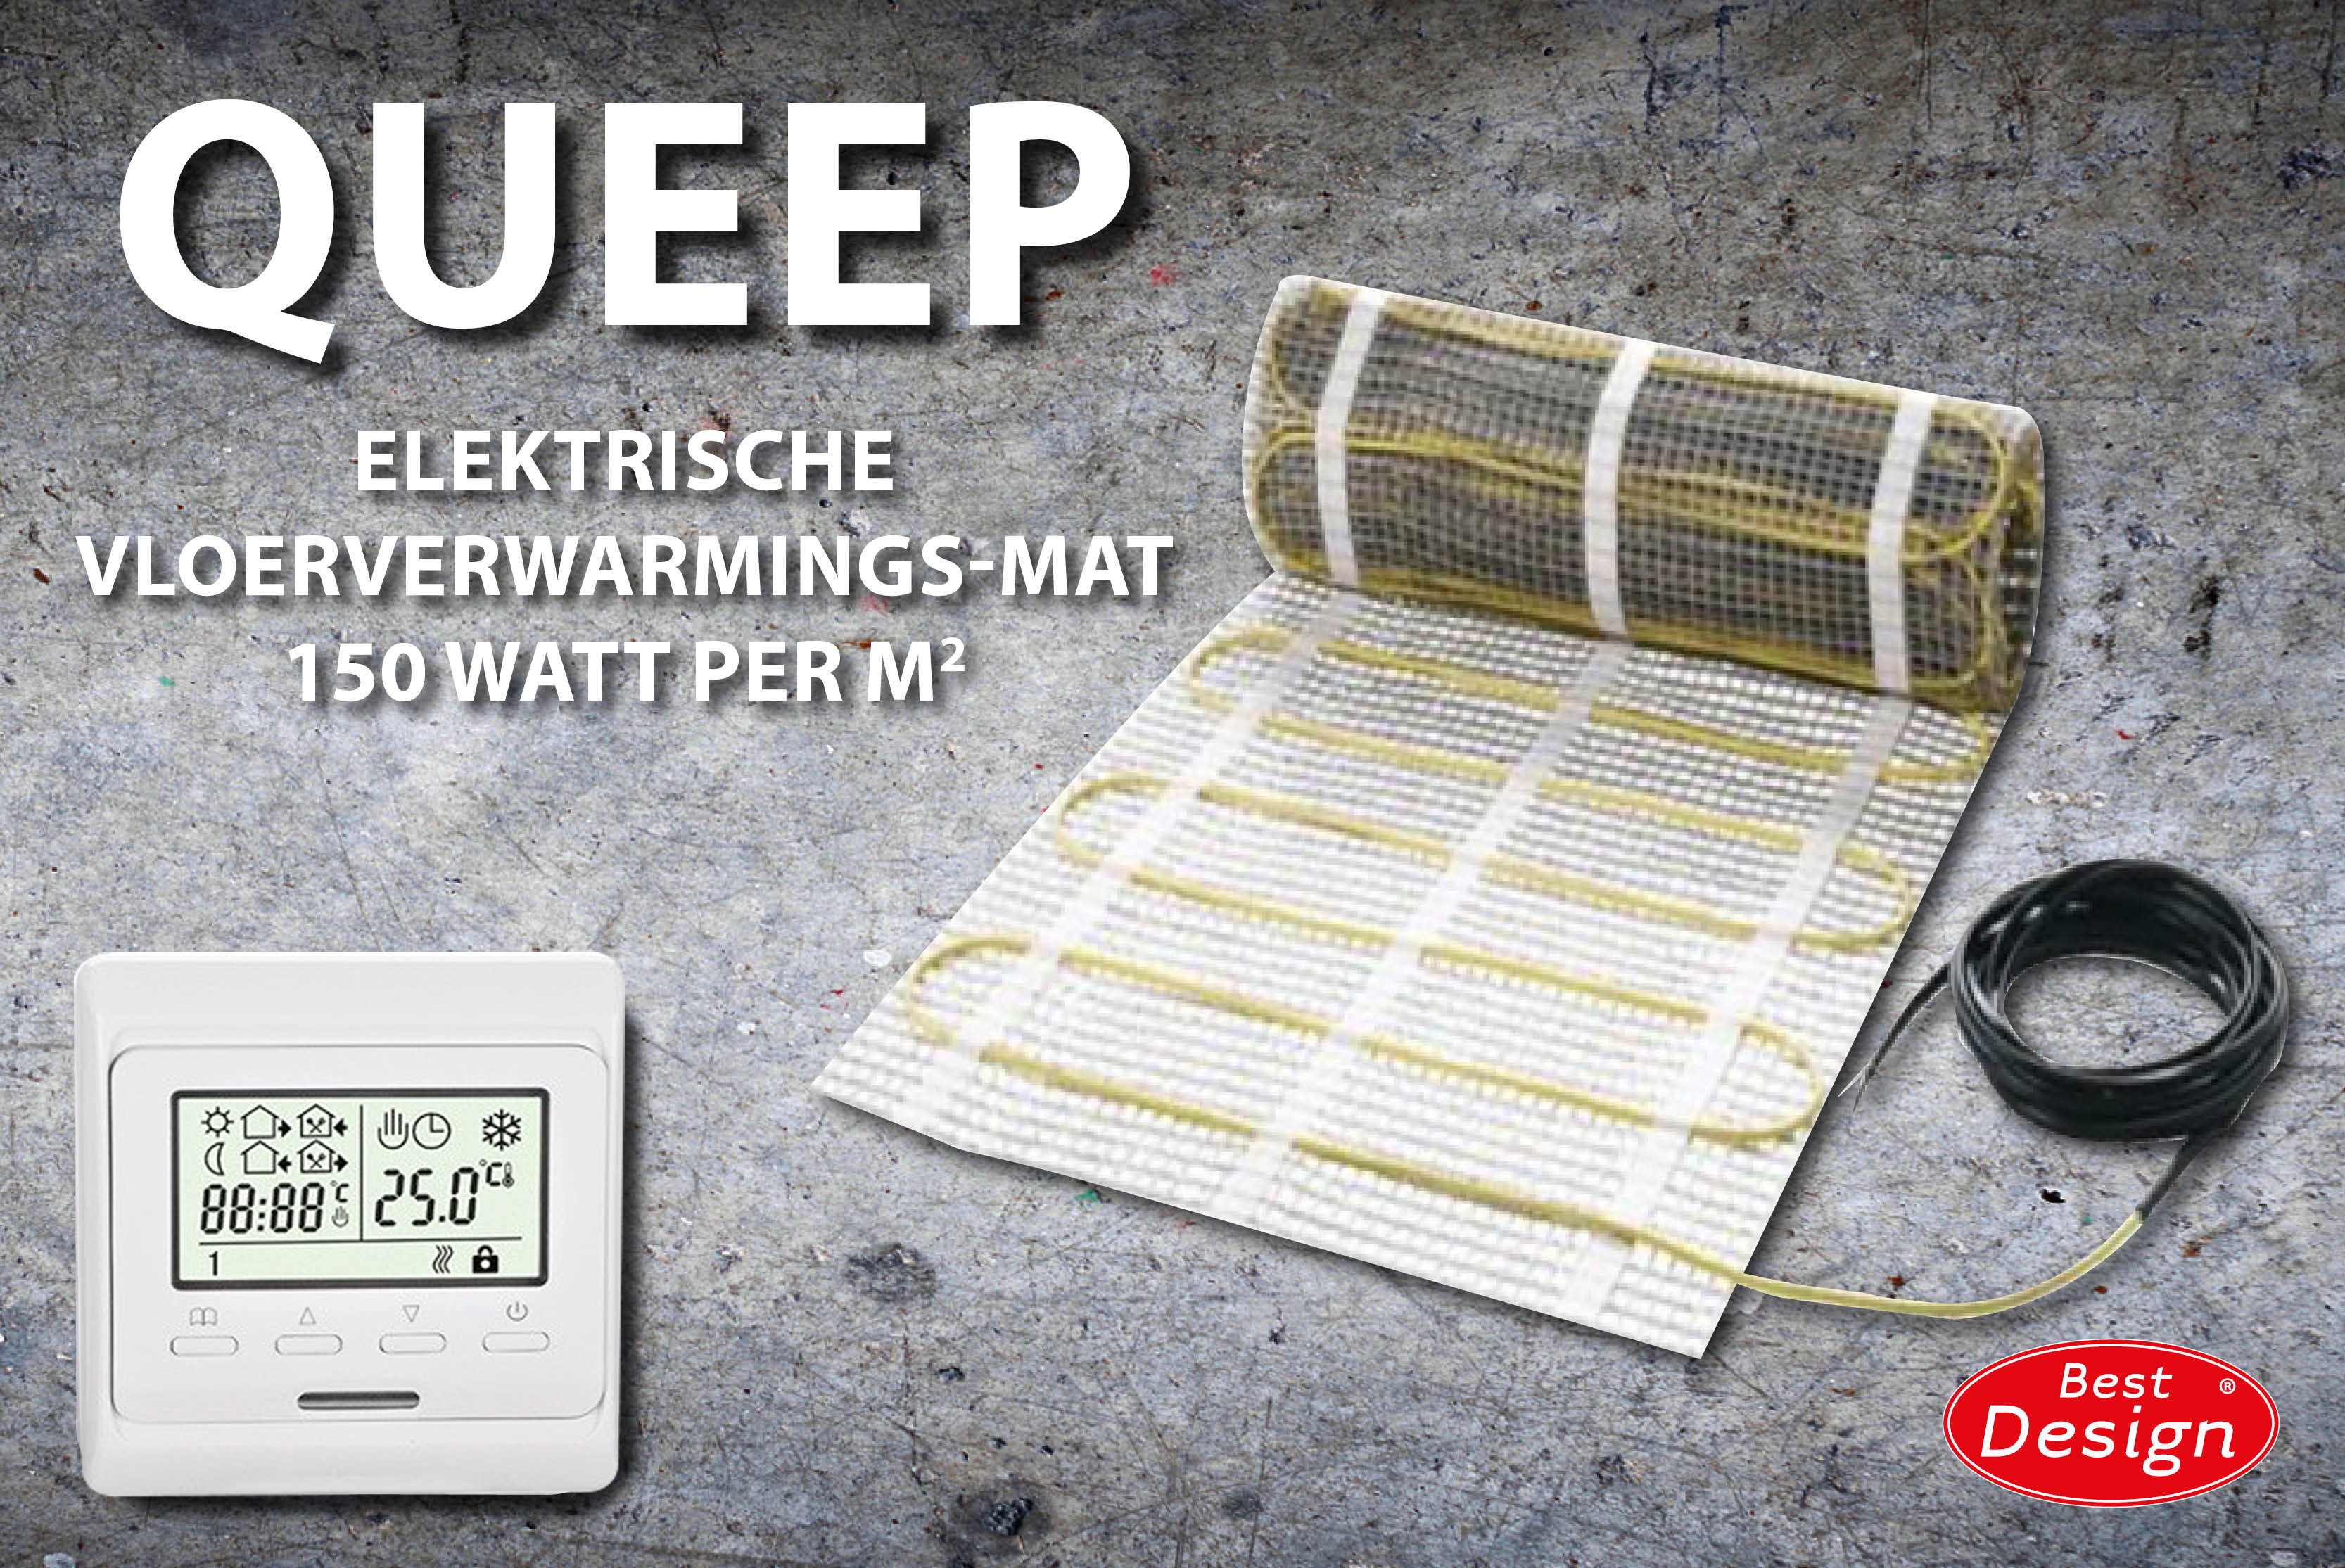 Best-Design Queep elektrische vloerverwarmings-mat 0.5 m2 Top Merken Winkel